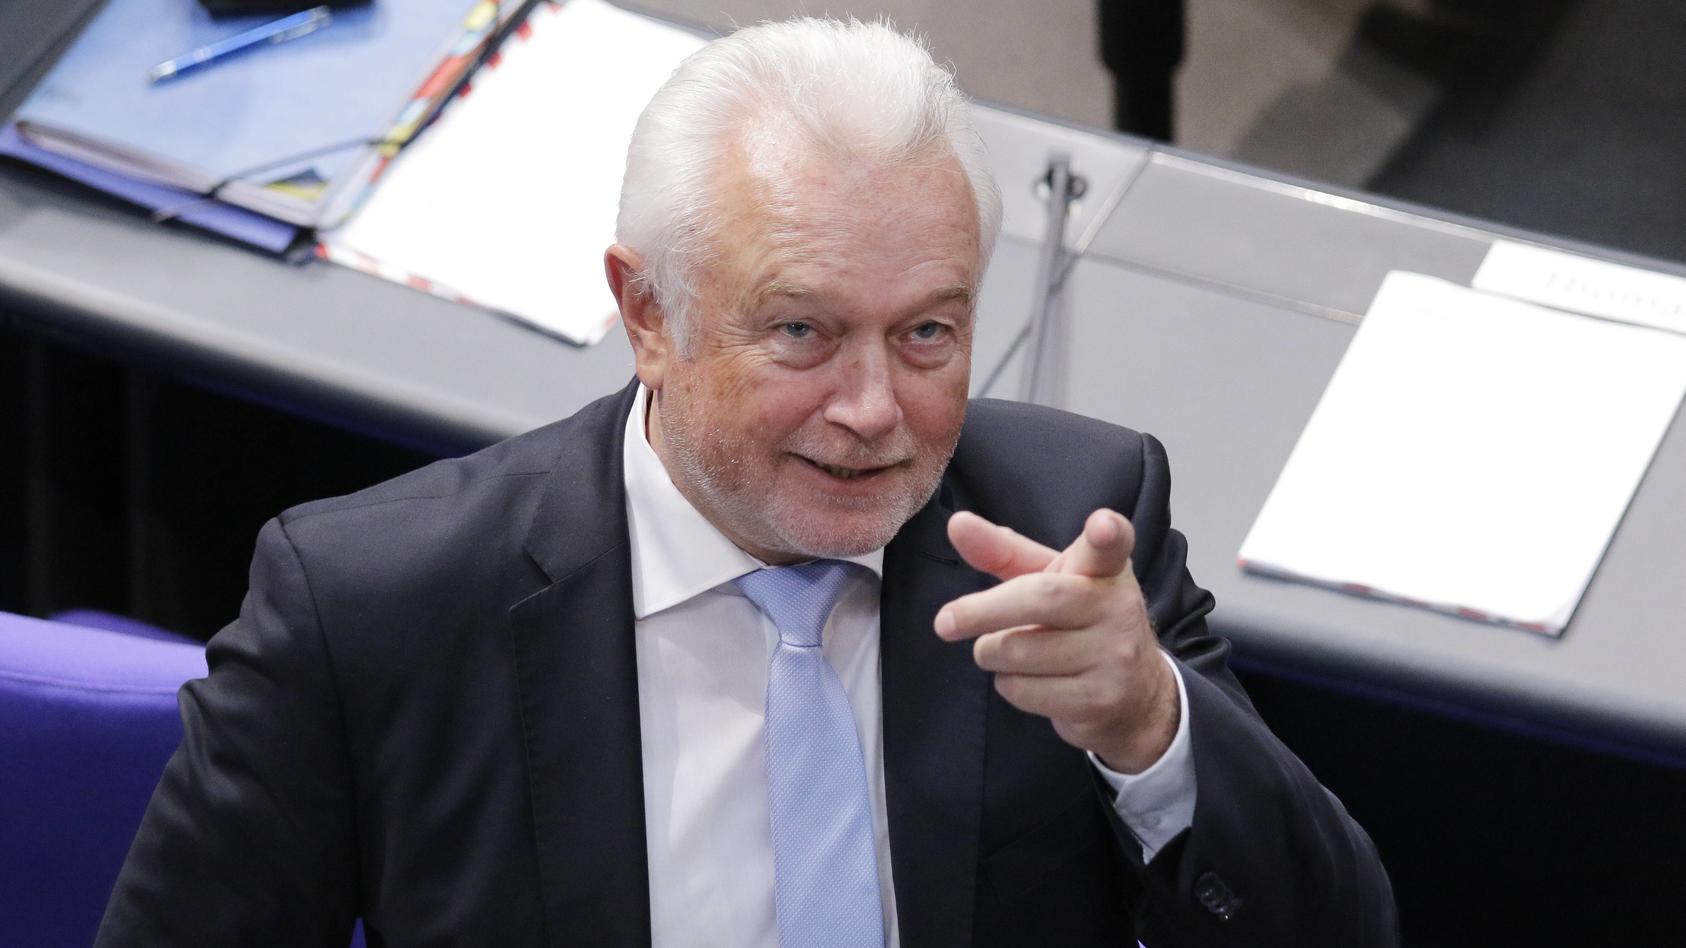  Wolfgang Kubicki (FDP) macht eine Geste mit seiner Hand im Plenarsaal des Deutschen Bundestages